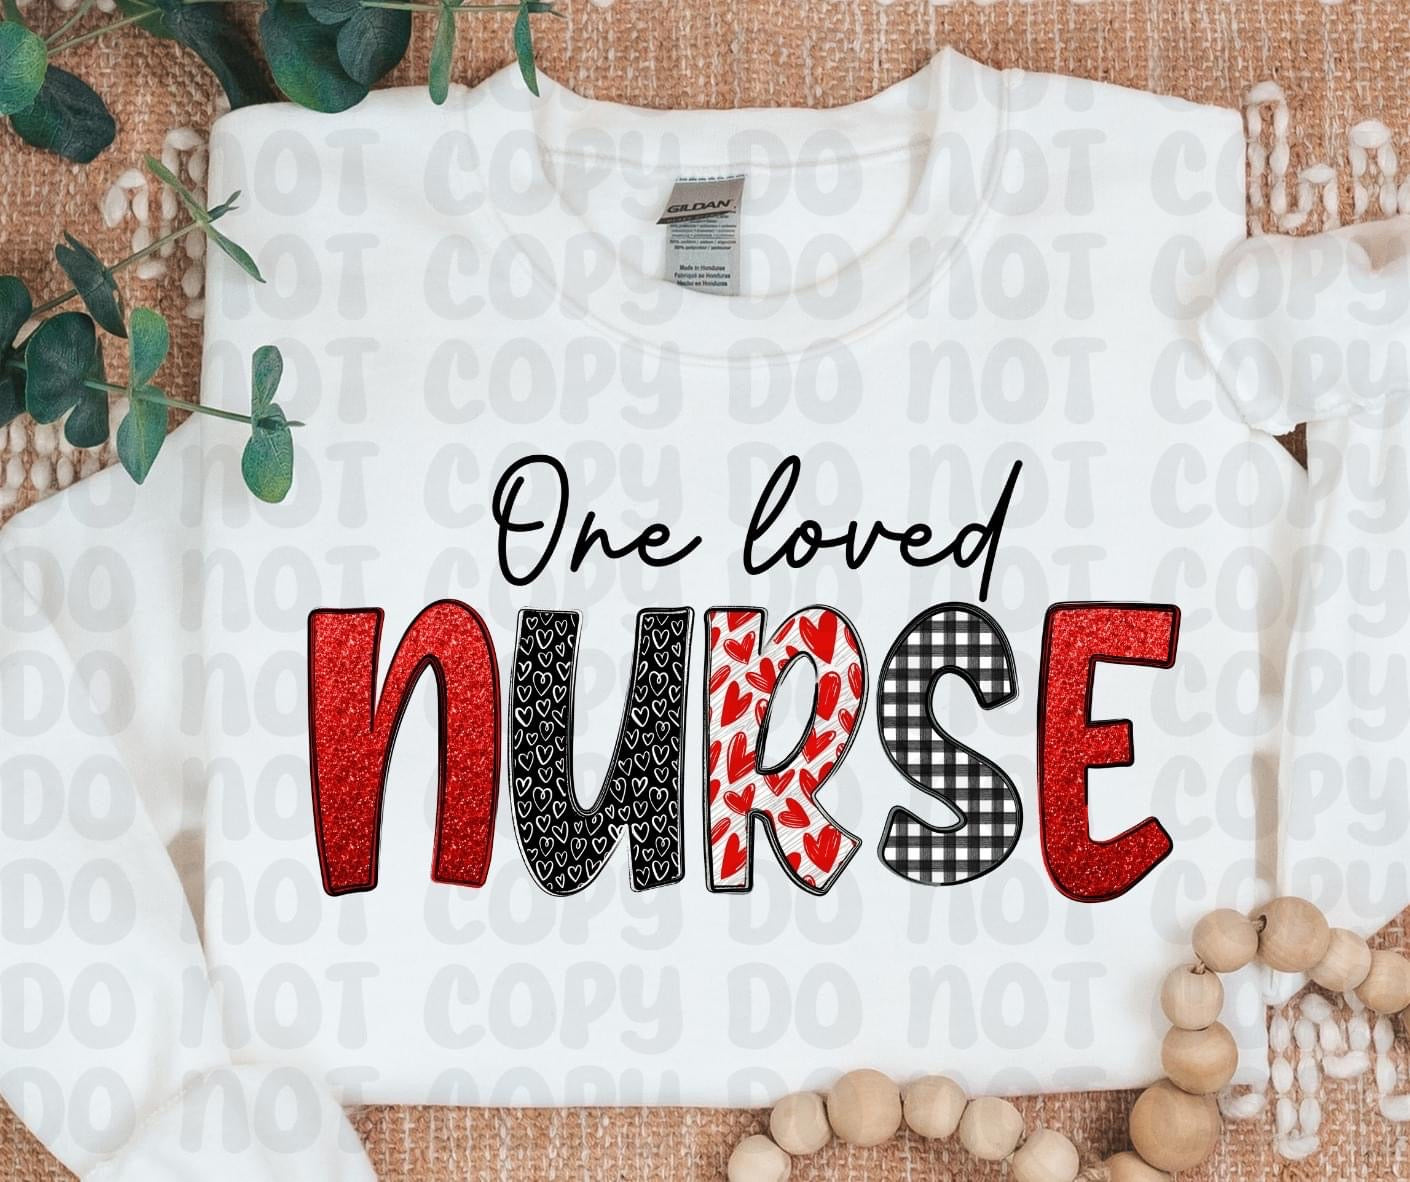 One loved nurse DTF